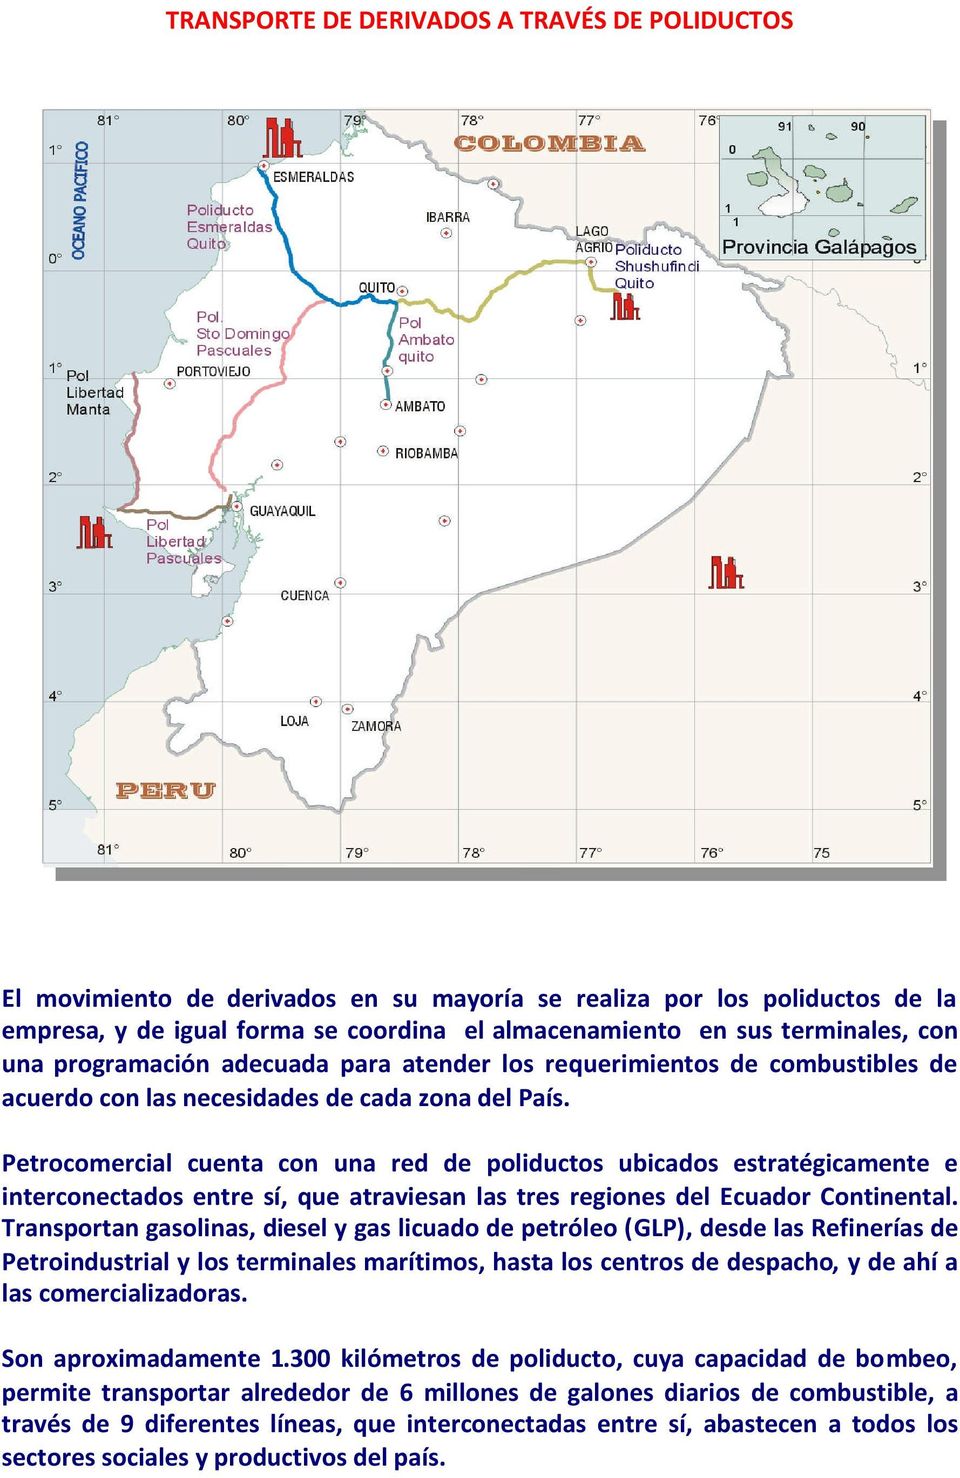 Petrocomercial cuenta con una red de poliductos ubicados estratégicamente e interconectados entre sí, que atraviesan las tres regiones del Ecuador Continental.